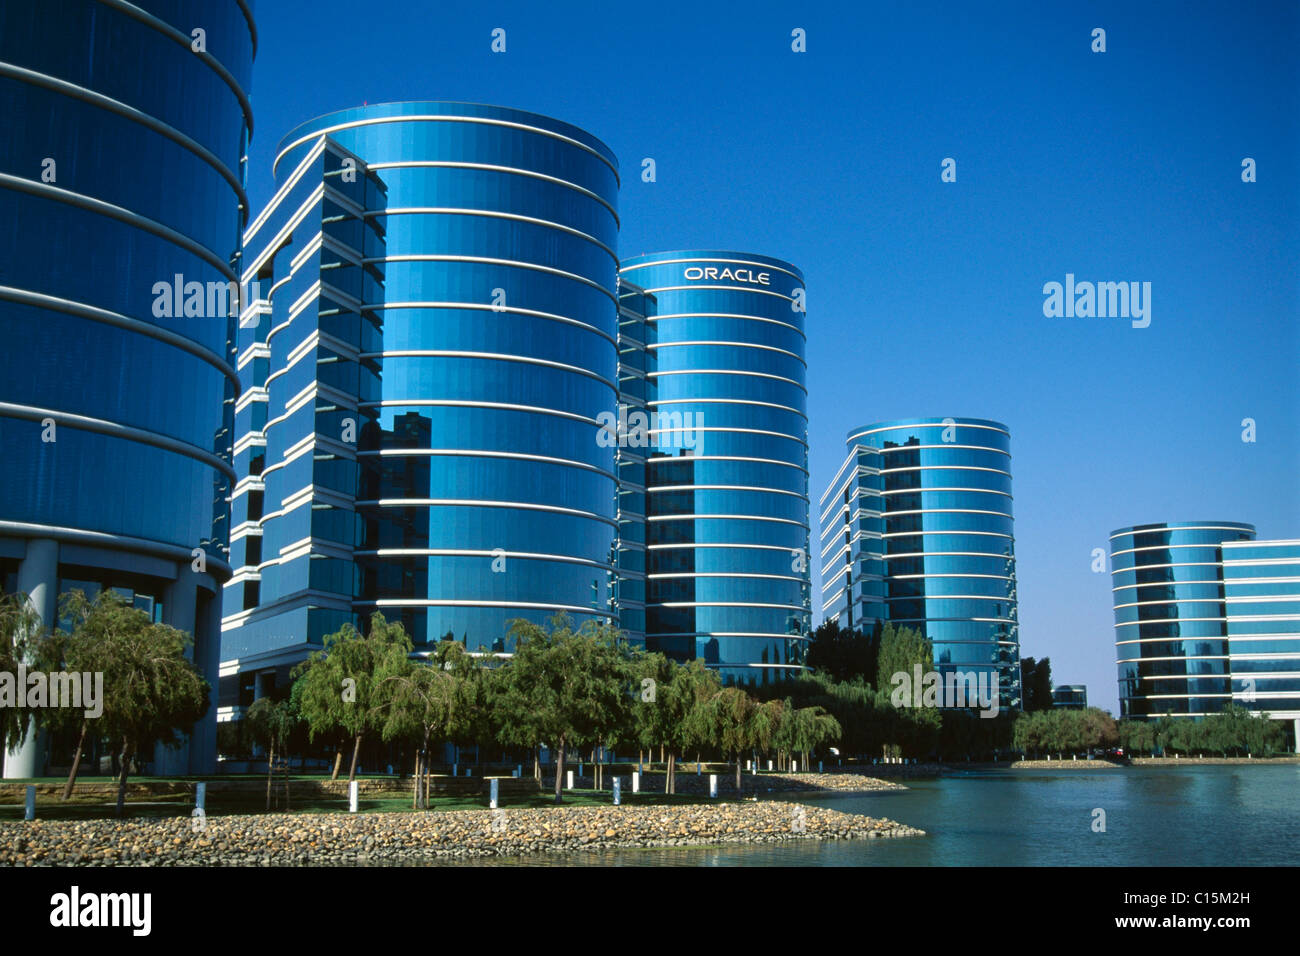 Oracle-Gebäude, Silicon Valley, Kalifornien, USA Stockfoto